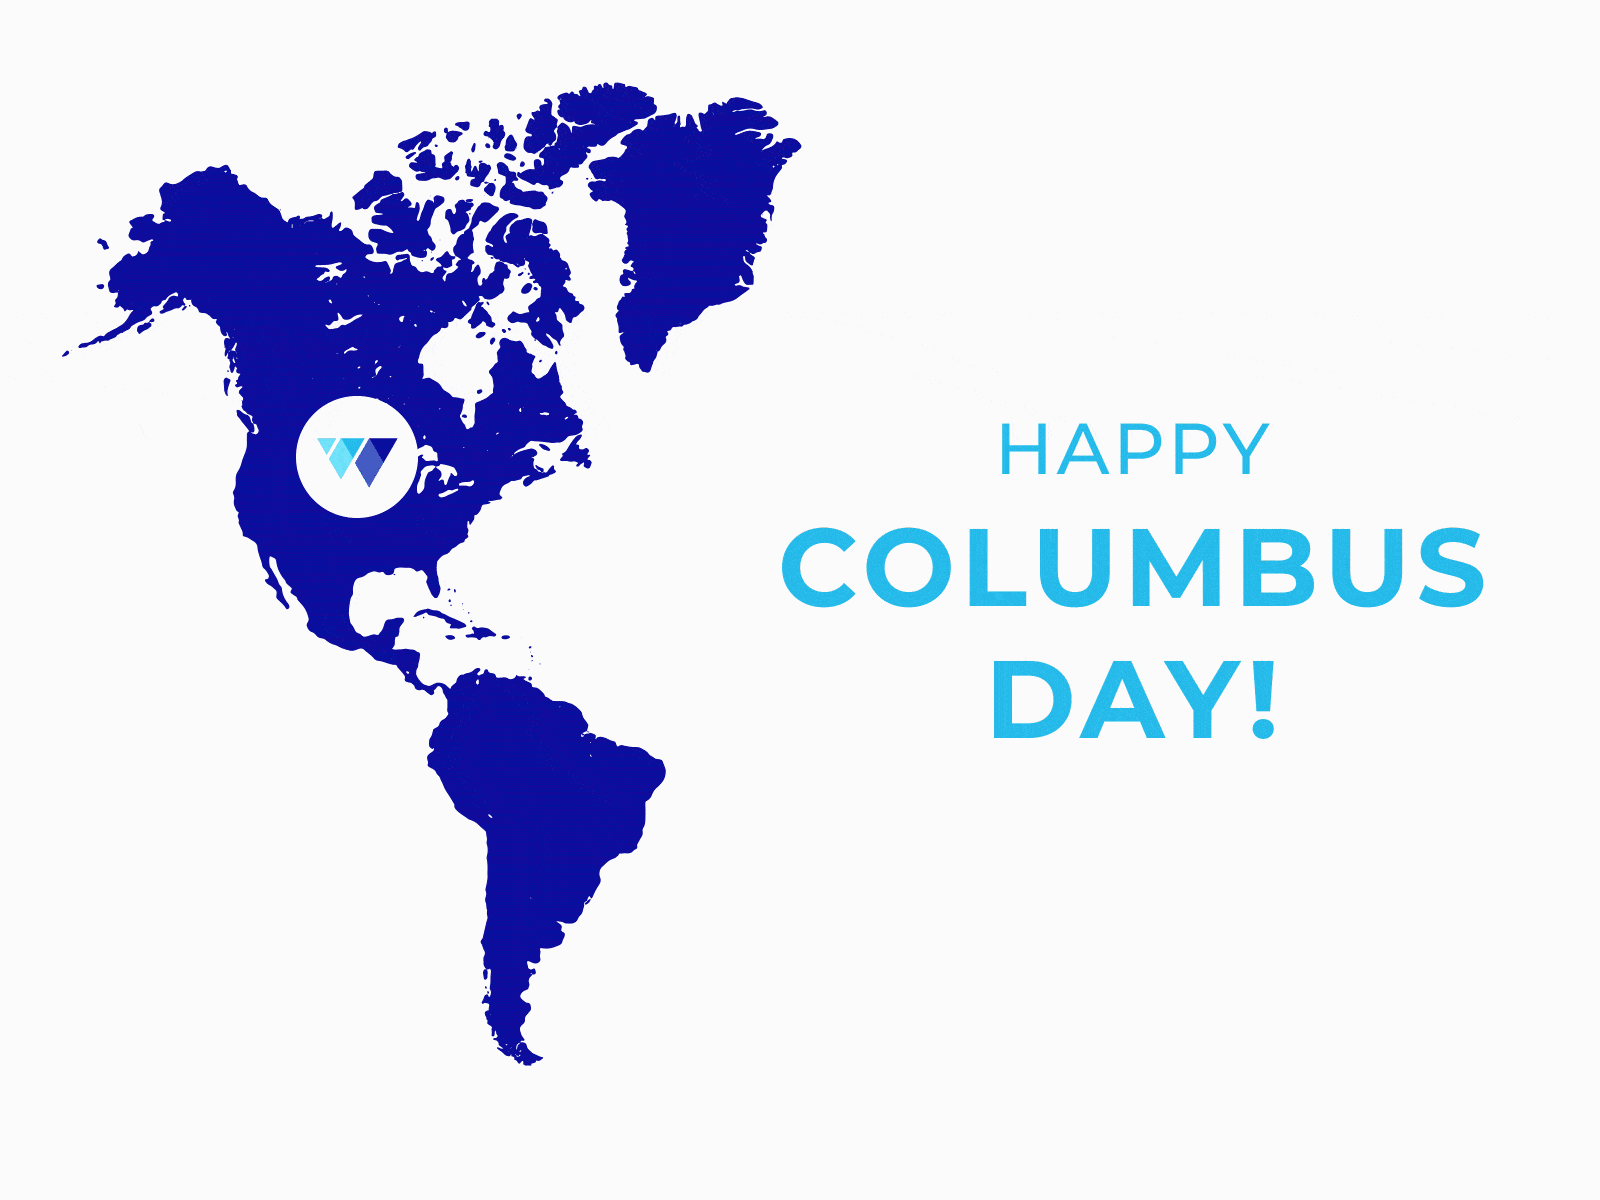 Happy Columbus Day 2019!